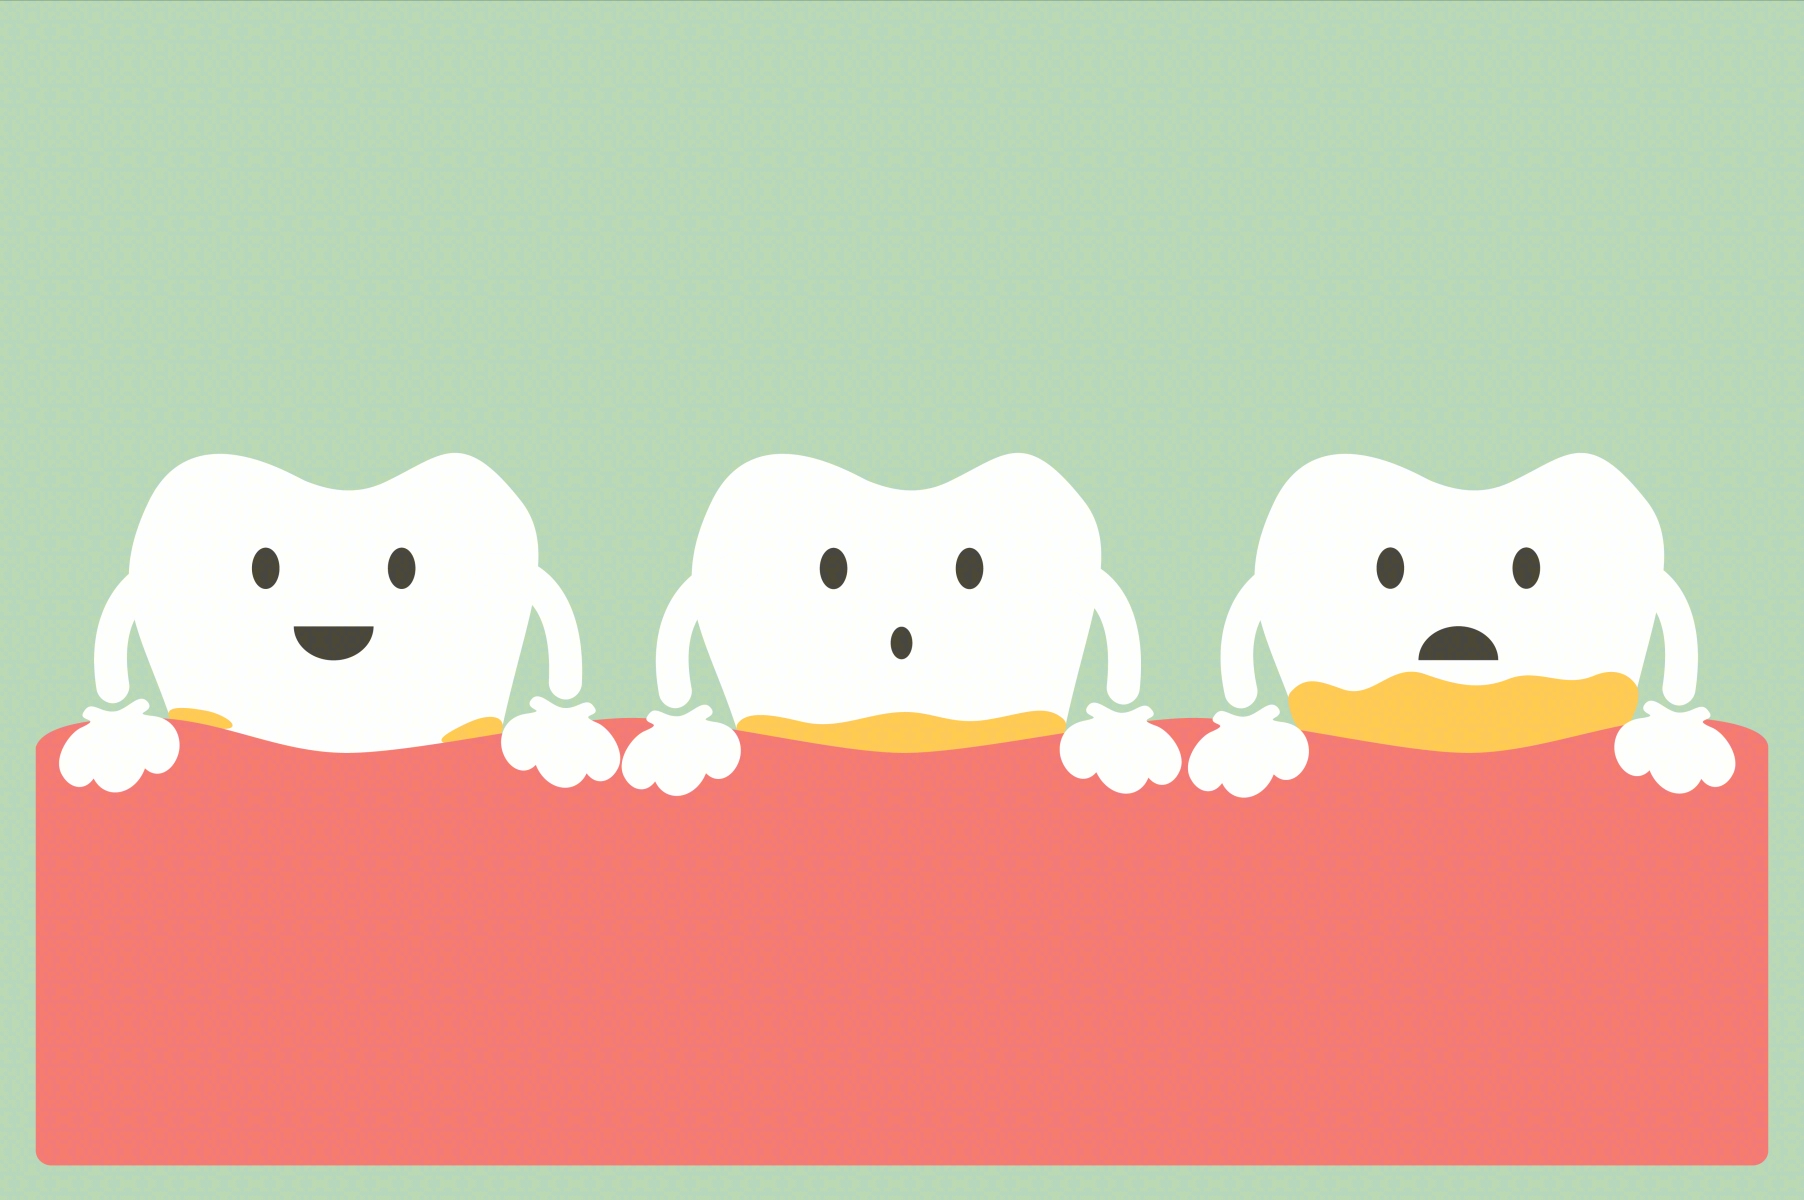 斑块和牙垢积聚:原因、症状和治疗 - beplay官